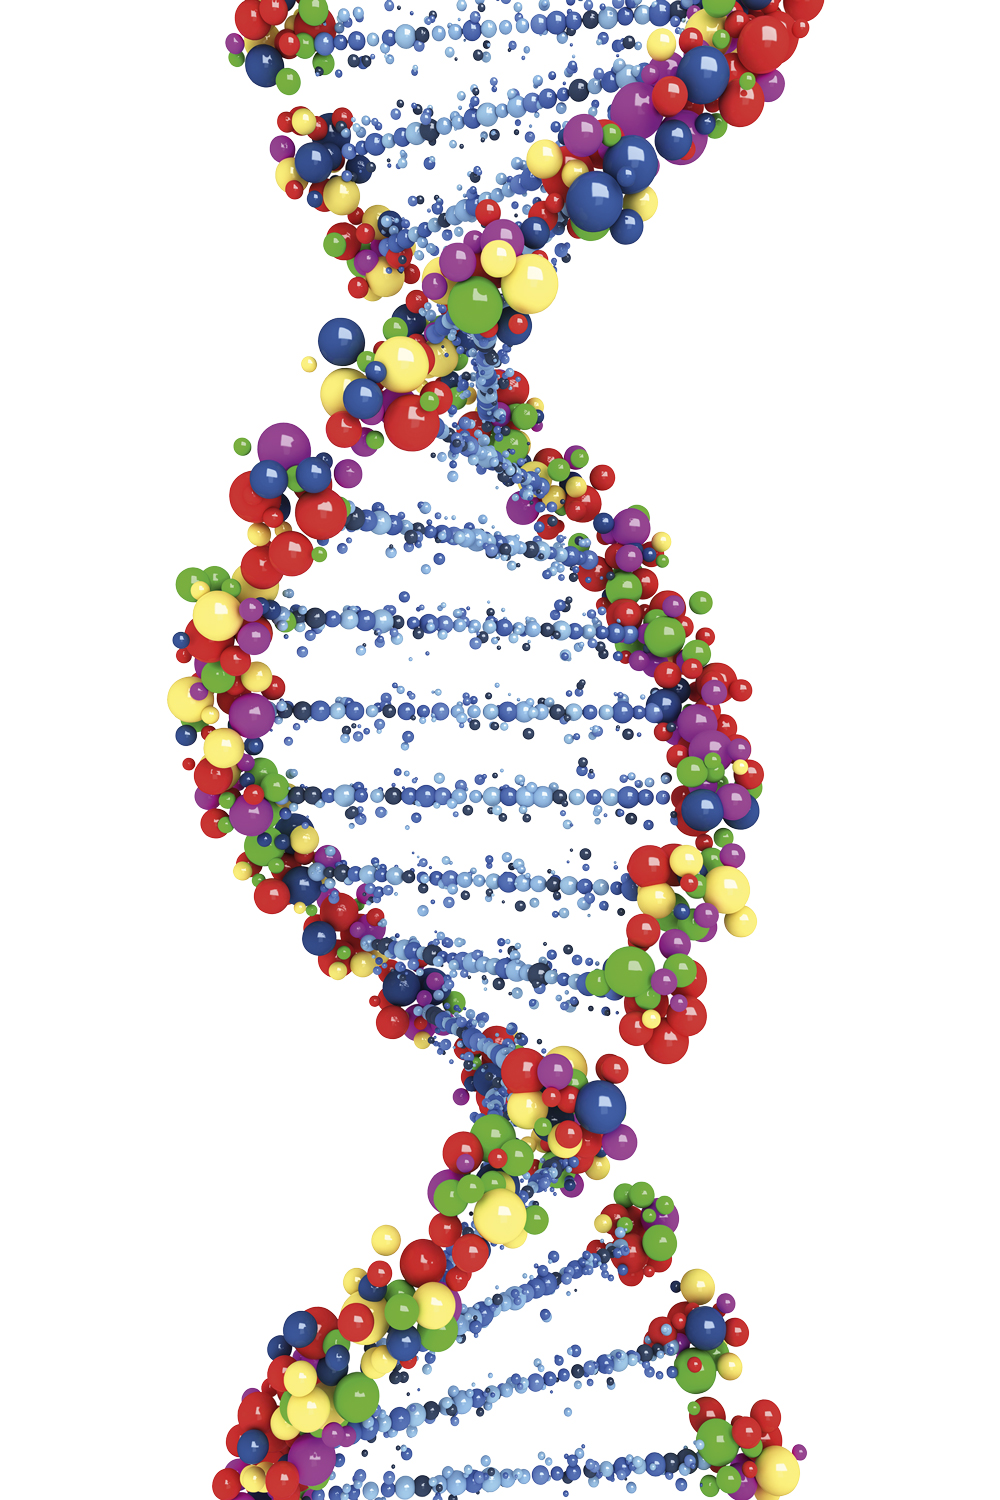 DNA - Dupla hélice: duas fitas ligadas que se enrolam uma na outra como uma escada